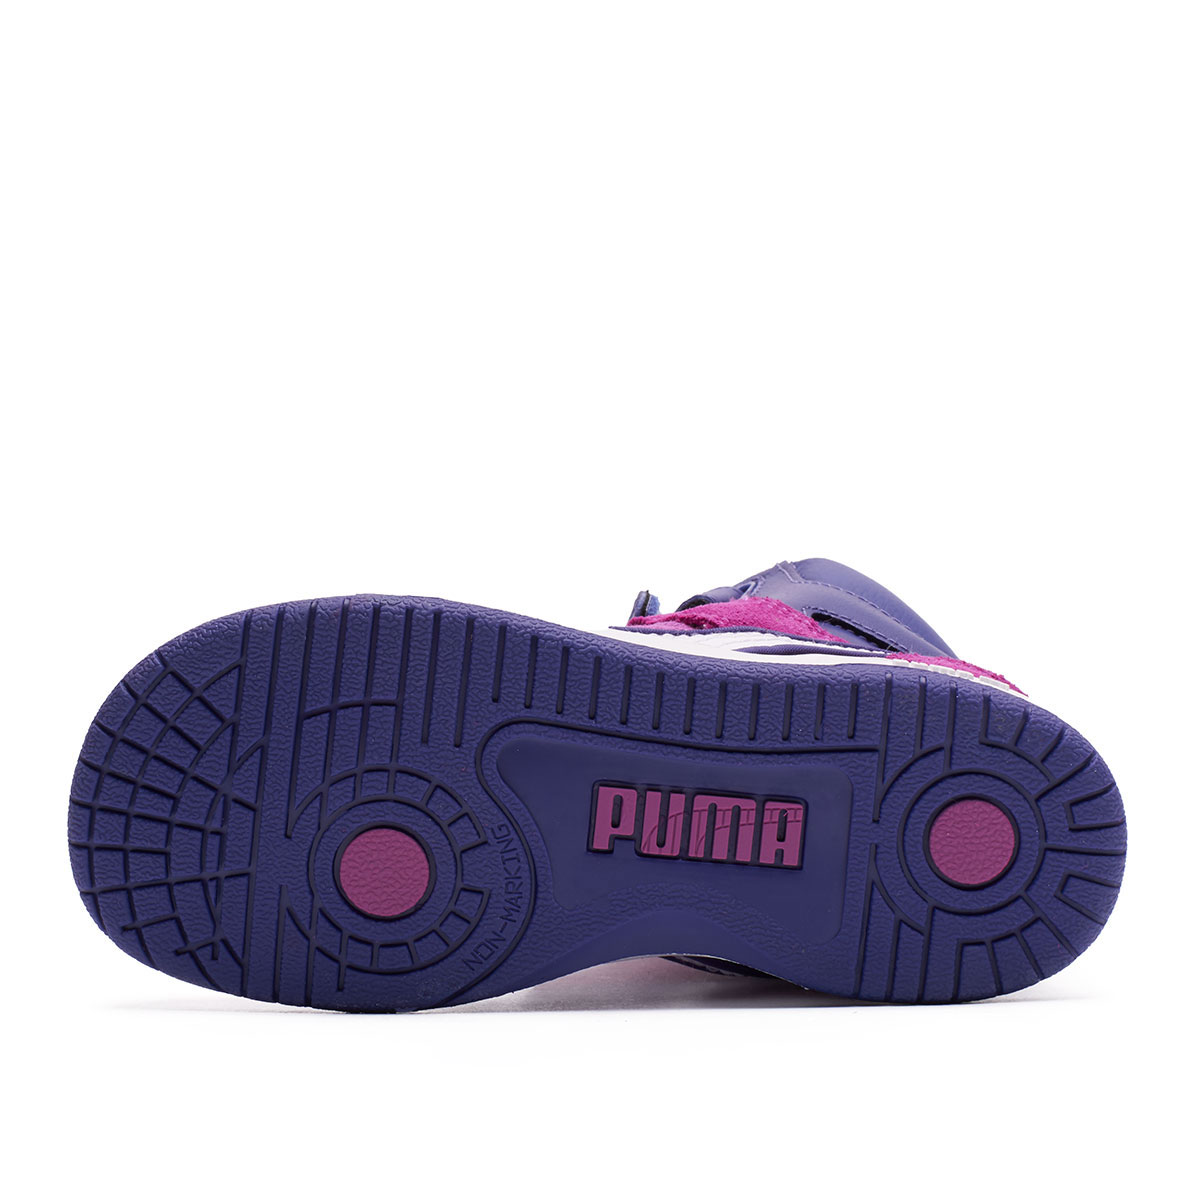 Puma Rebound Street Strap CVS K  358591-03